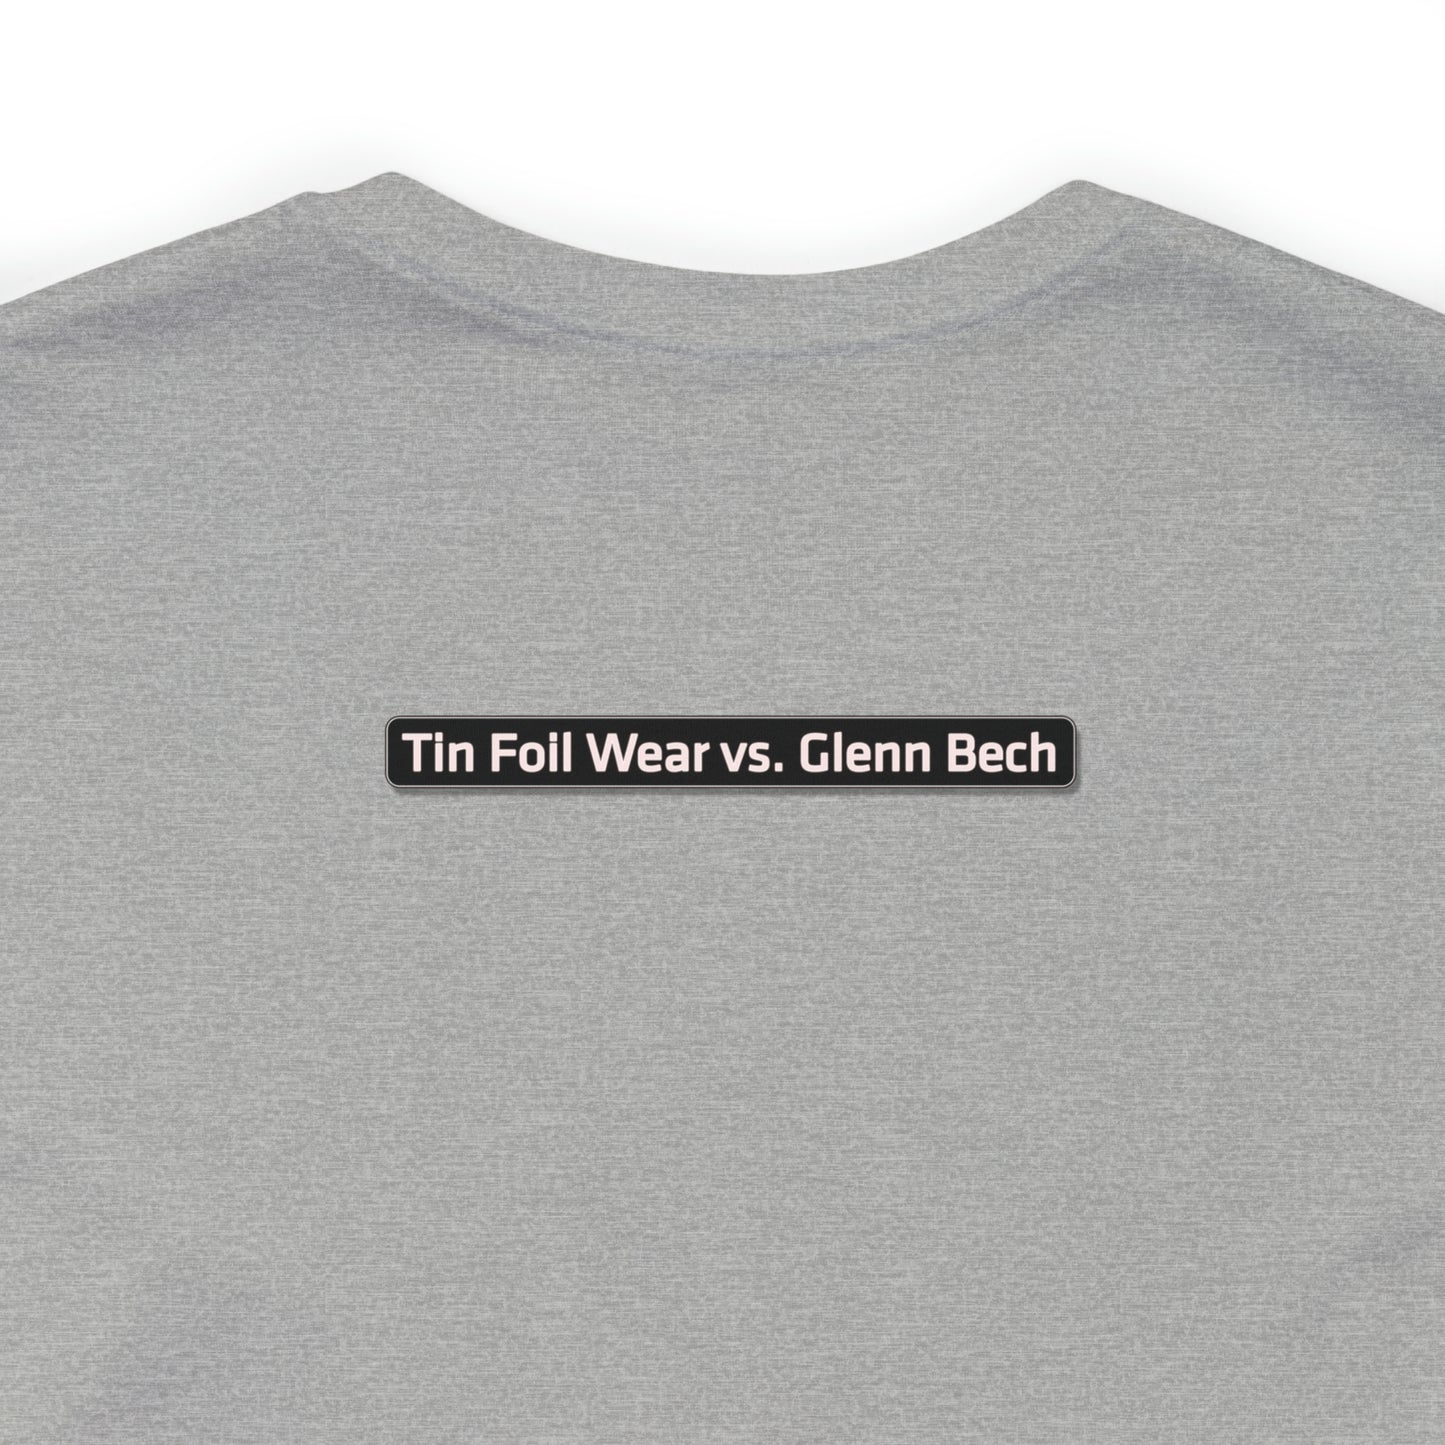 "USA er ikke Danmark" Tin Foil Wear vs. Glenn Bech